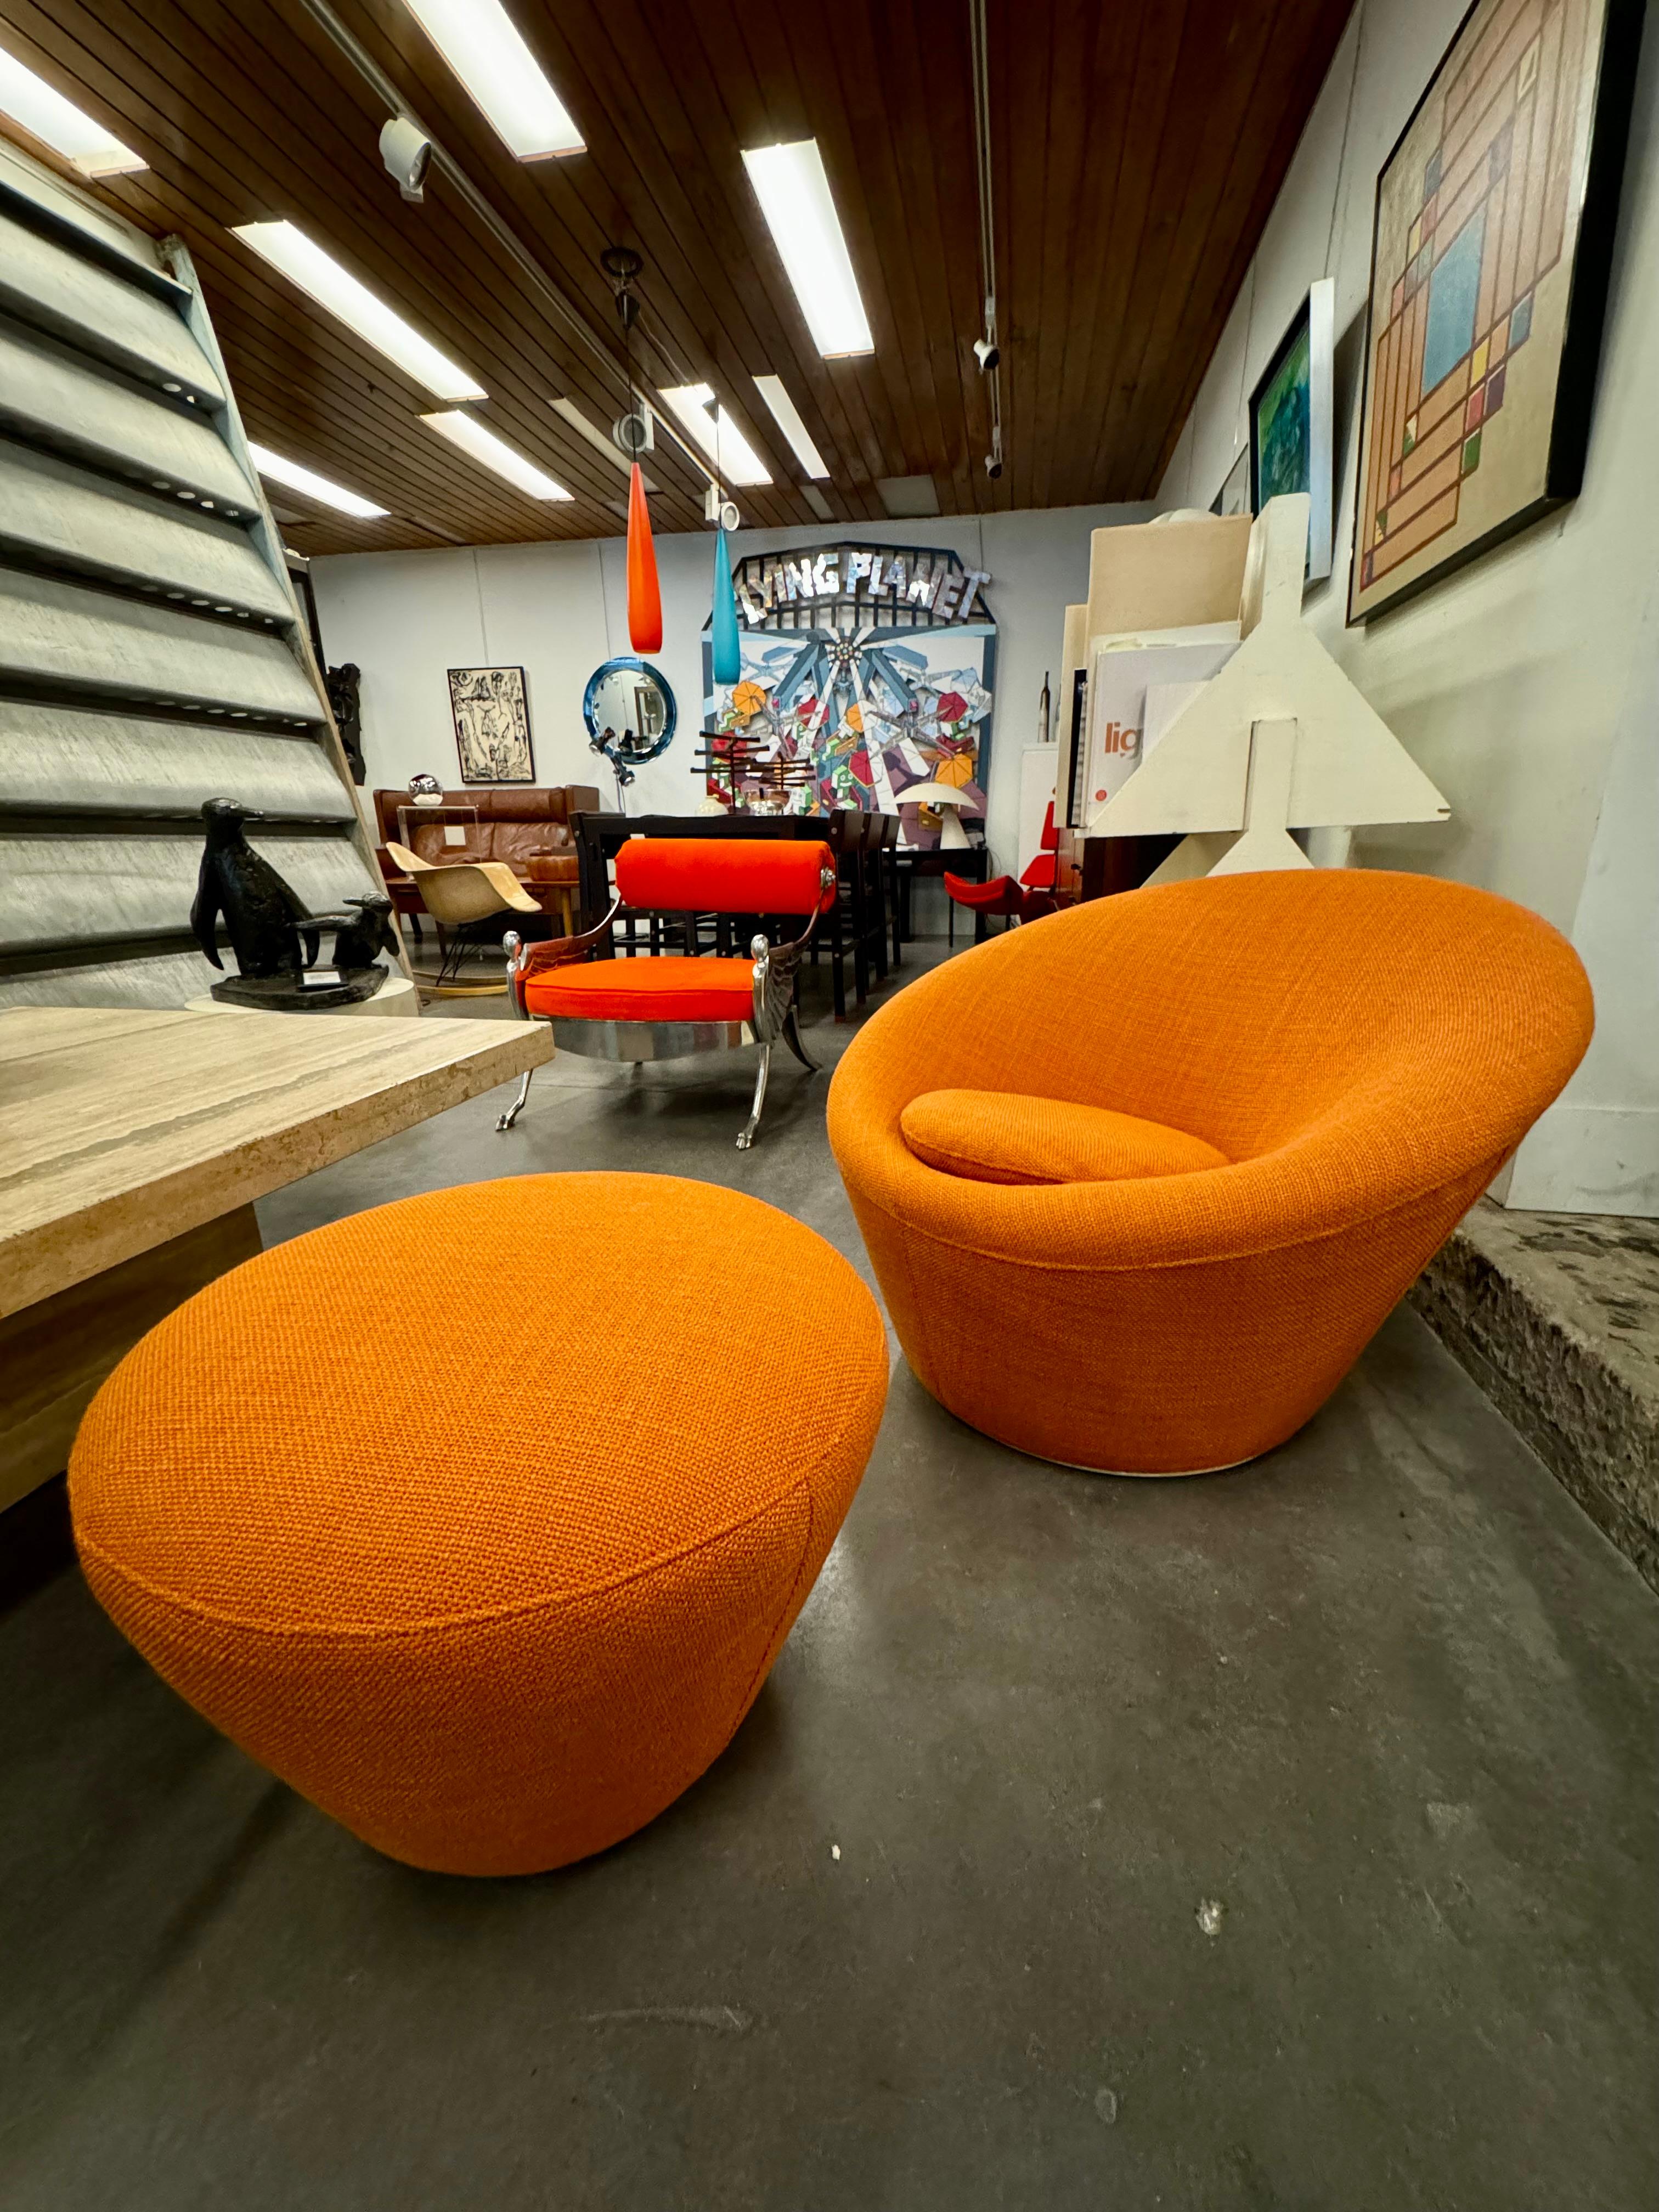 Pierre Paulin f560 genannt mushroom hier ist ein Sessel und Ottomane neu gepolstert in hochwertigen orangefarbenen Wollstoff 
Der Mushroom Armchair, der 1959 von dem renommierten französischen Designer Pierre Paulin entworfen wurde, strahlt zeitlose